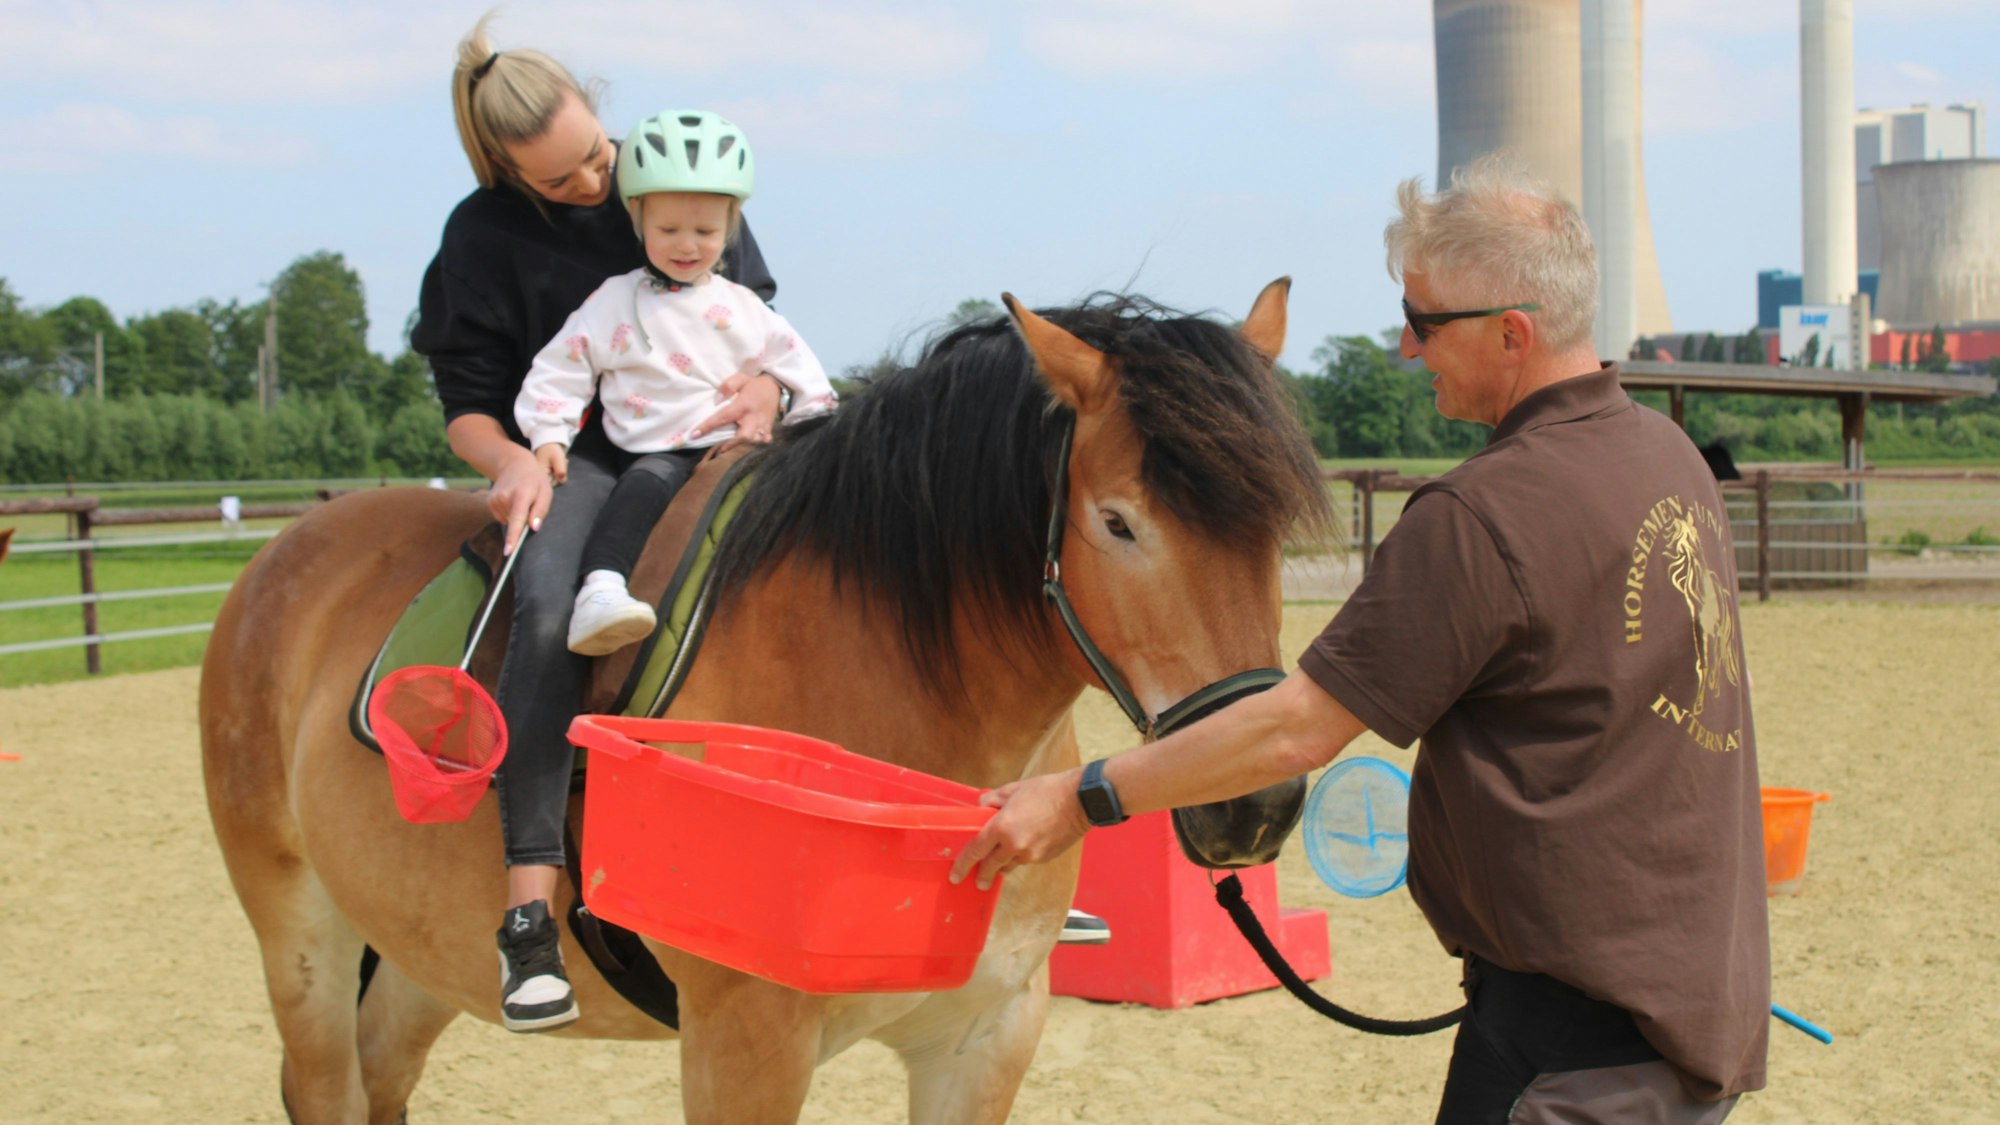 Auf dem Pferd ist zu sehen, wie Sarah Strupp und ihre Tochter Lena auf dem Rücken von „Moritz “den Parcours meistern. Thomas Görs hilft ihnen dabei.